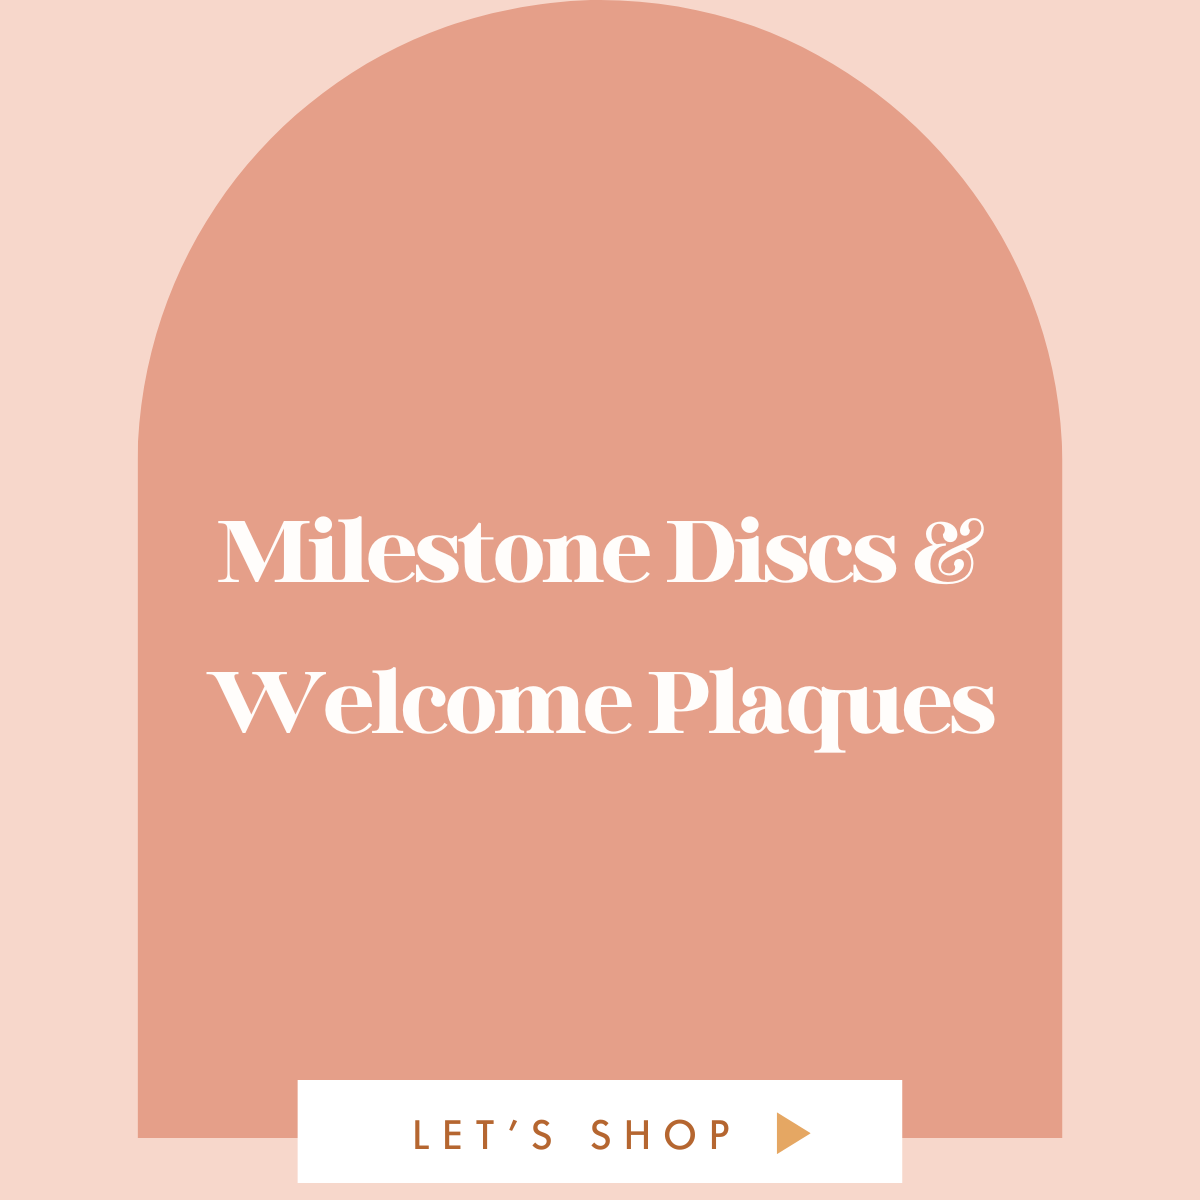 Milestone Discs & Welcome Plaques